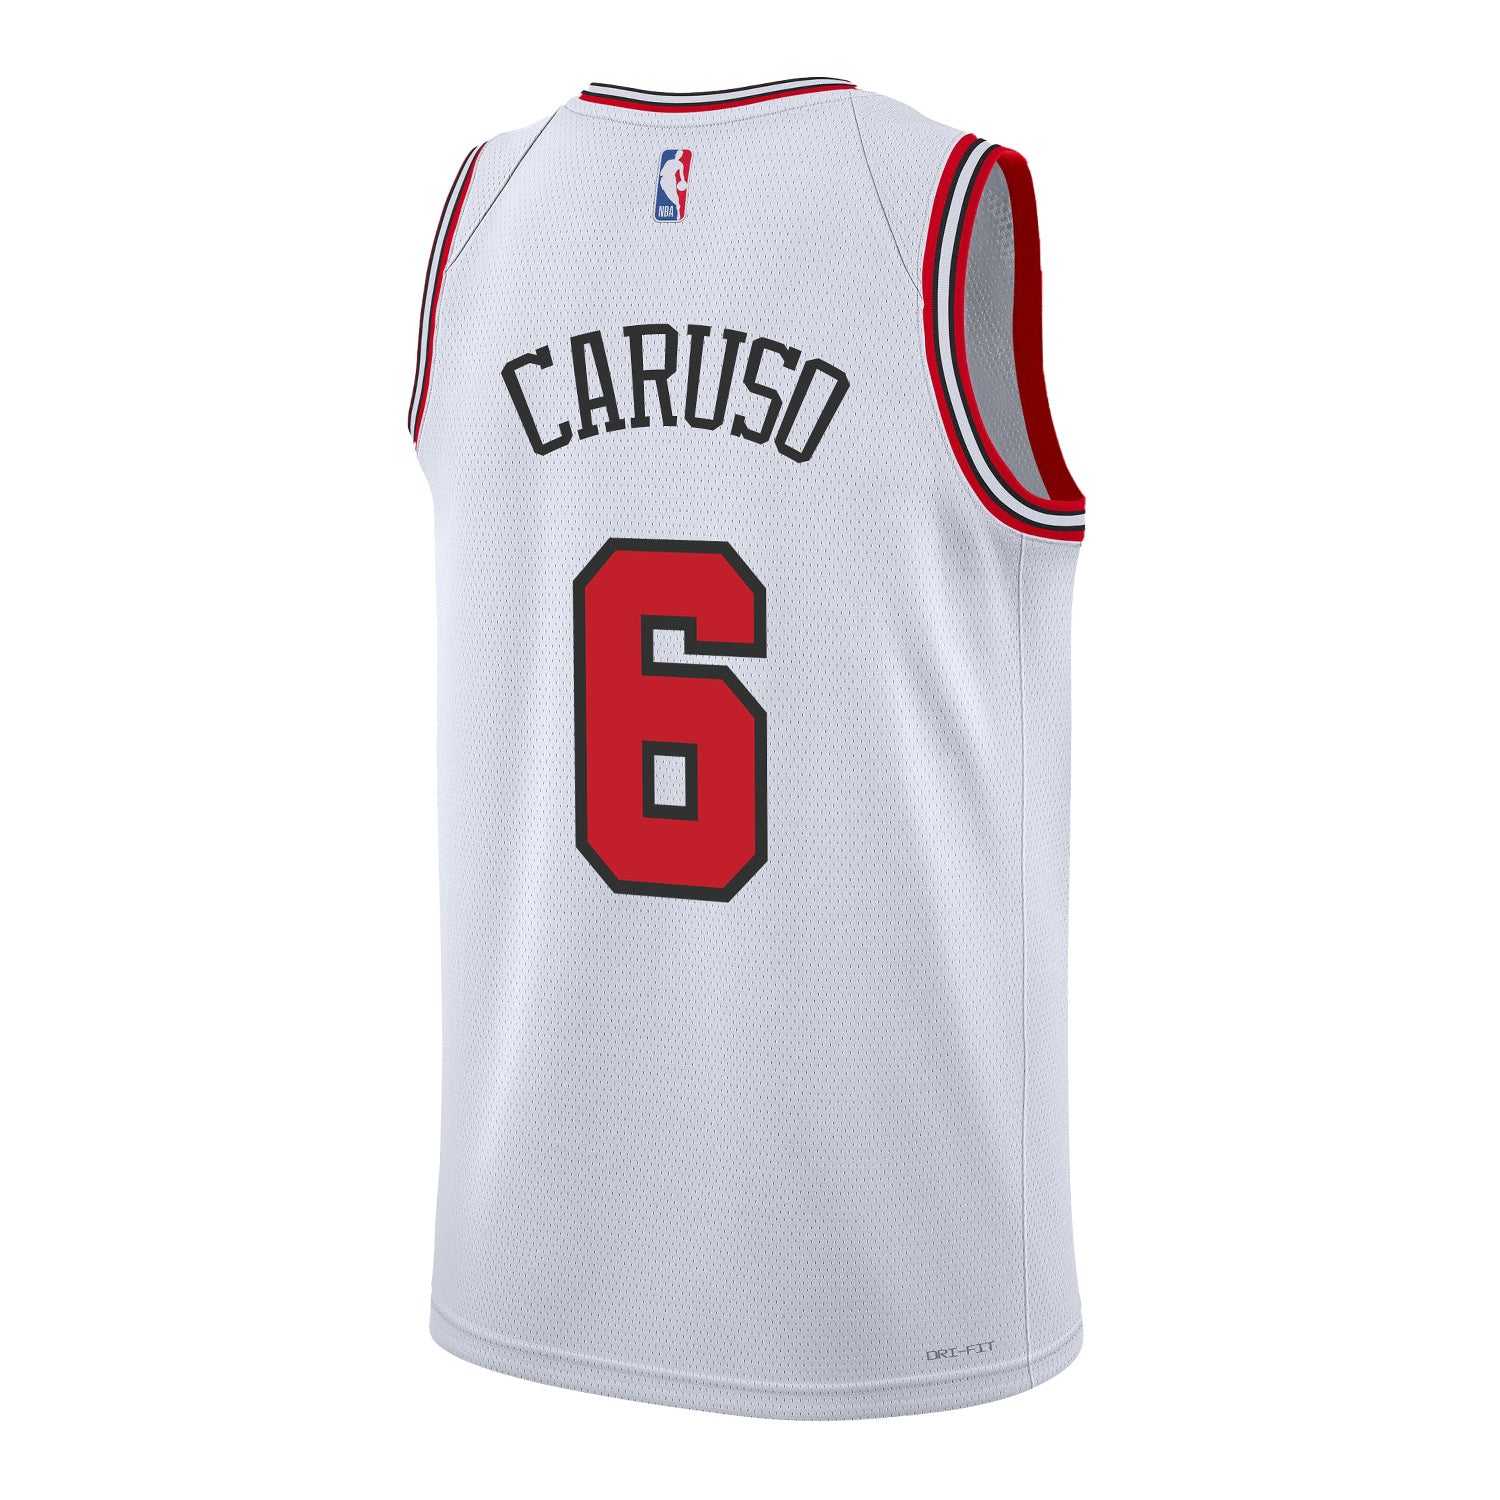 Chicago Bulls Alex Caruso Nike Icon Swingman Jersey